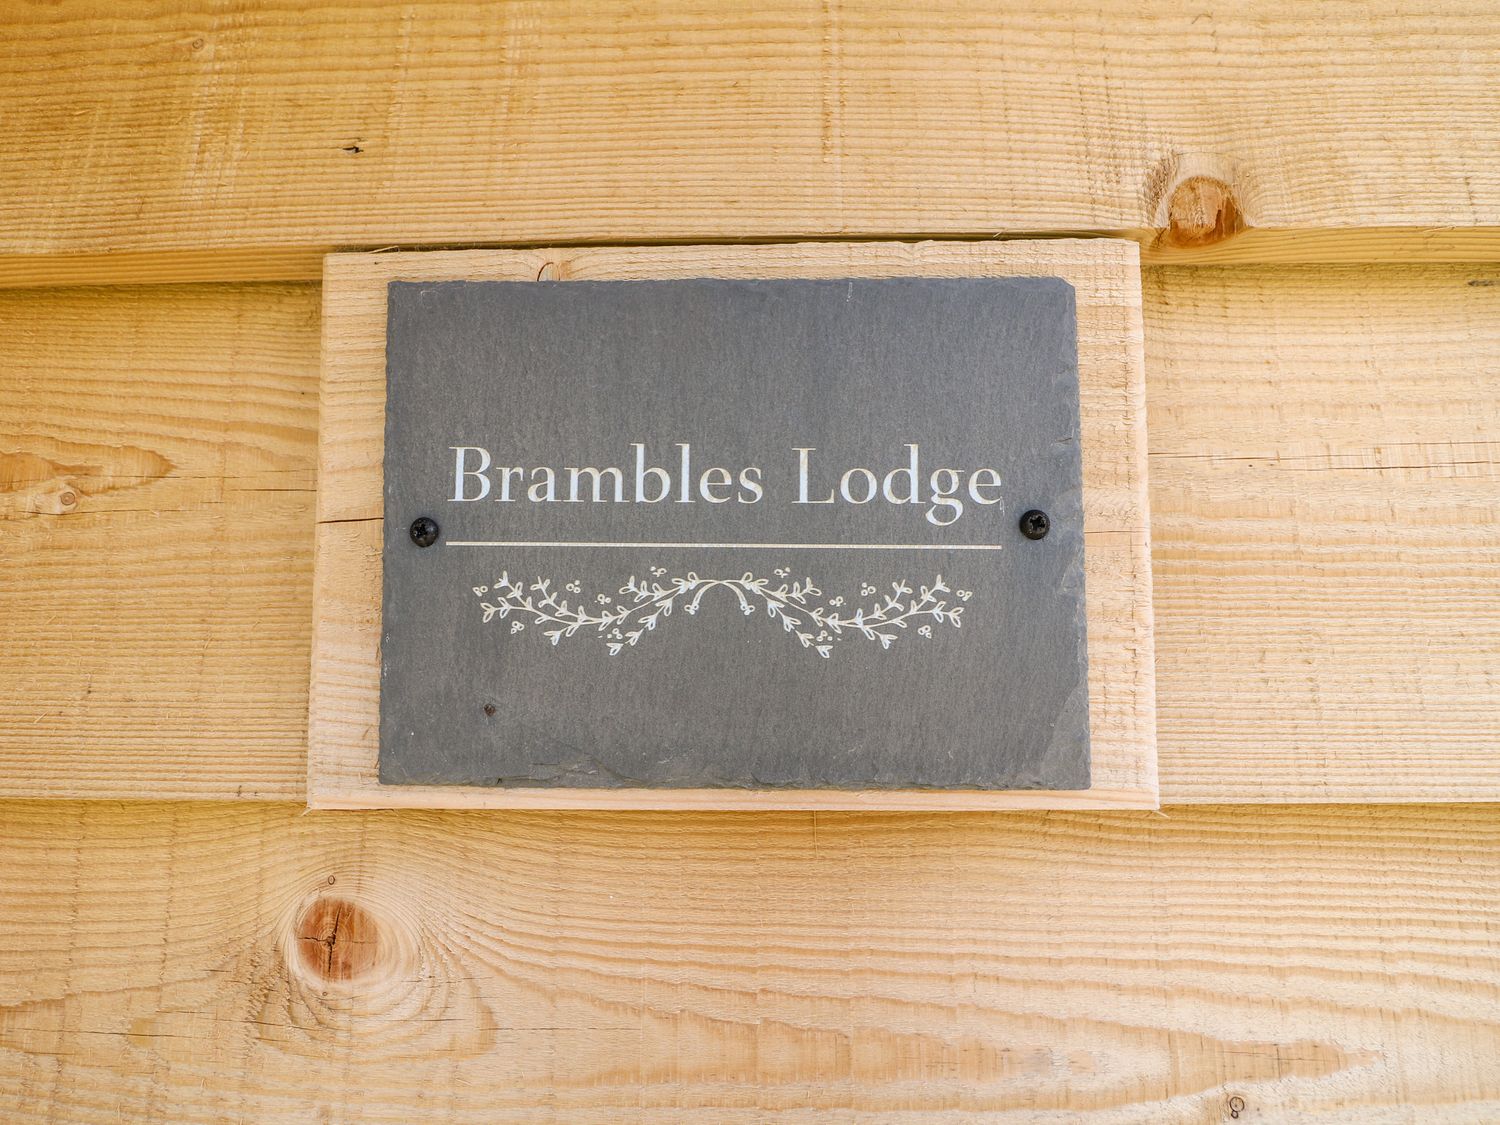 Brambles Lodge, Leek 